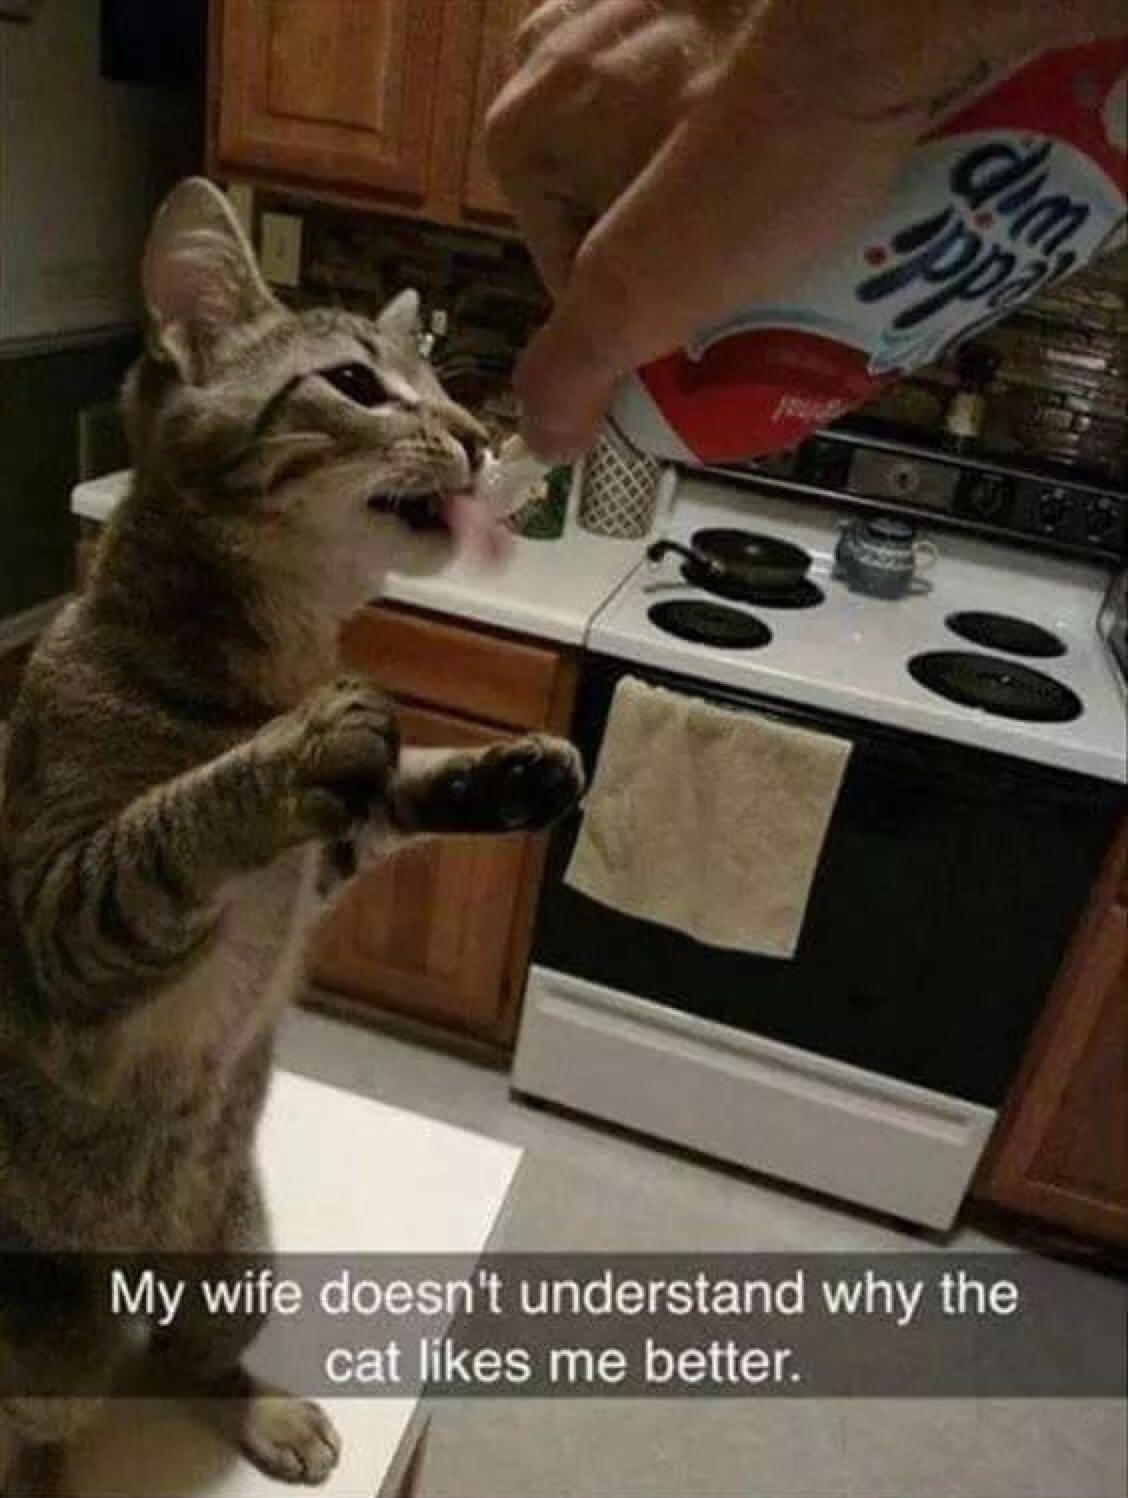 minha mulher n entende pq nosso gato gosta mais de mim - meme